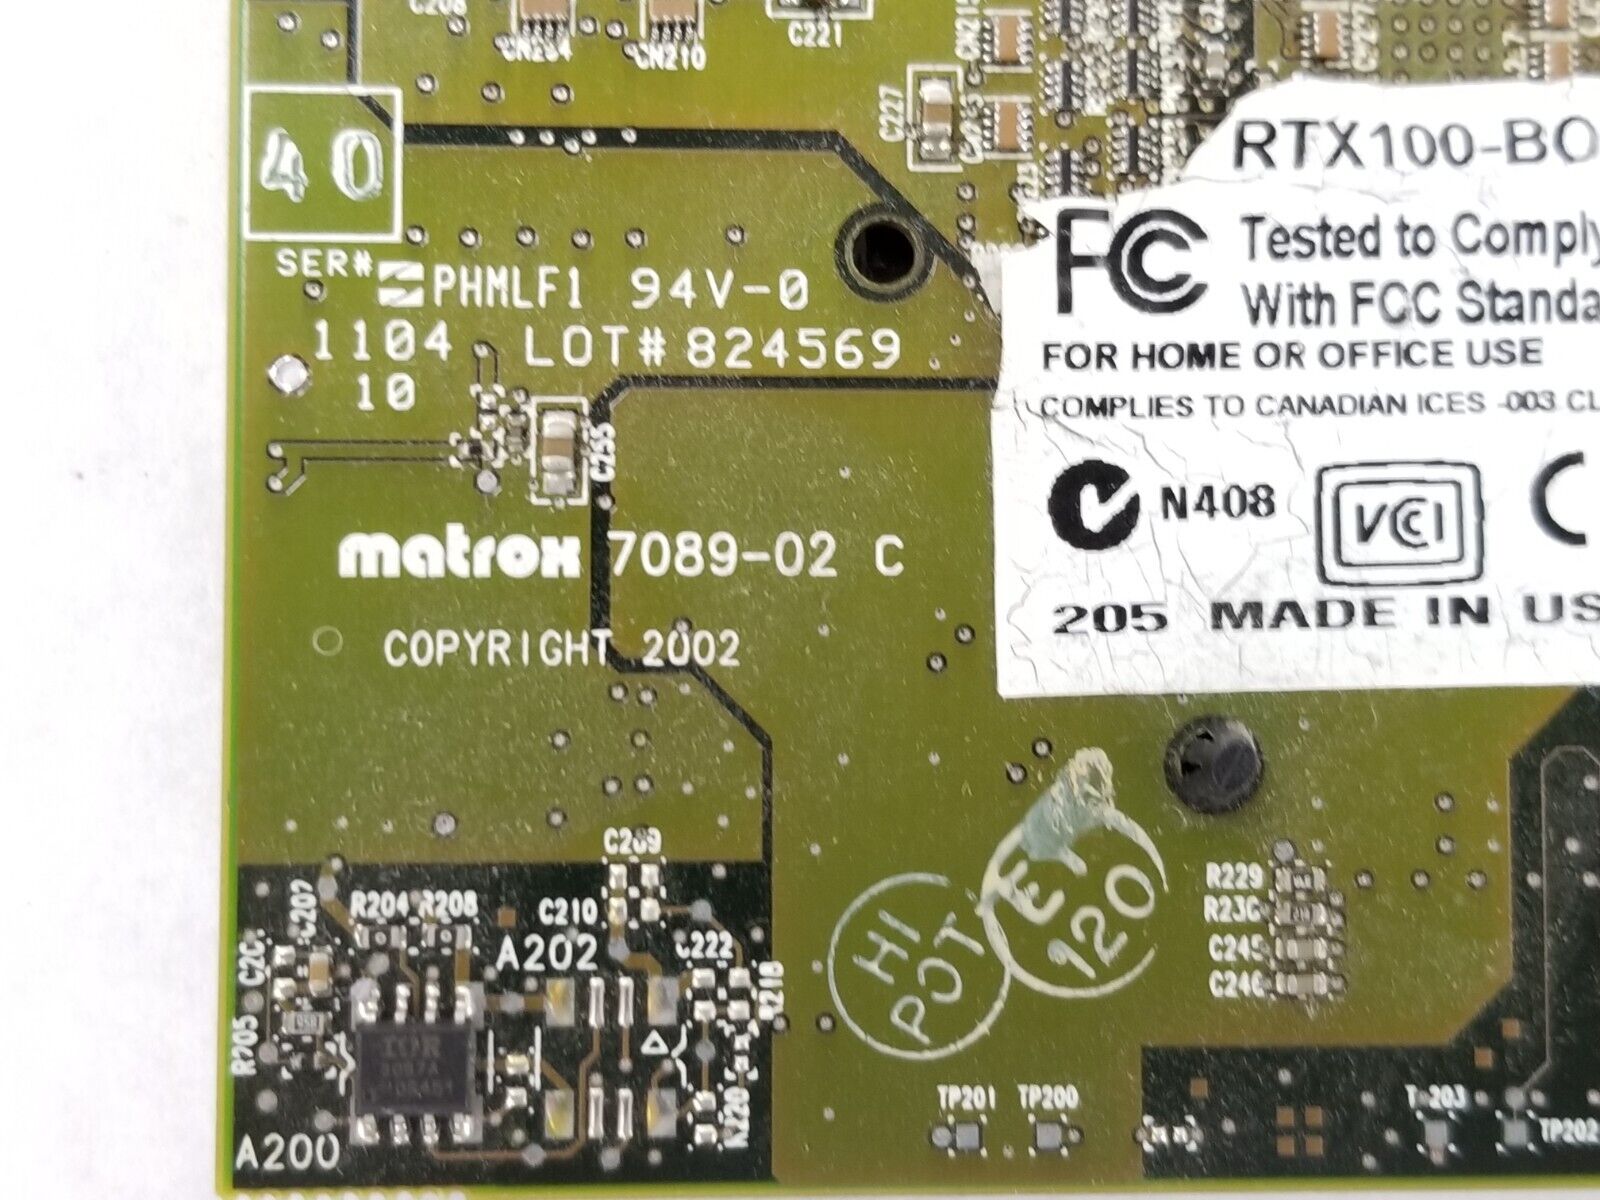 Matrox 7089-02 C RTX100-BOARD